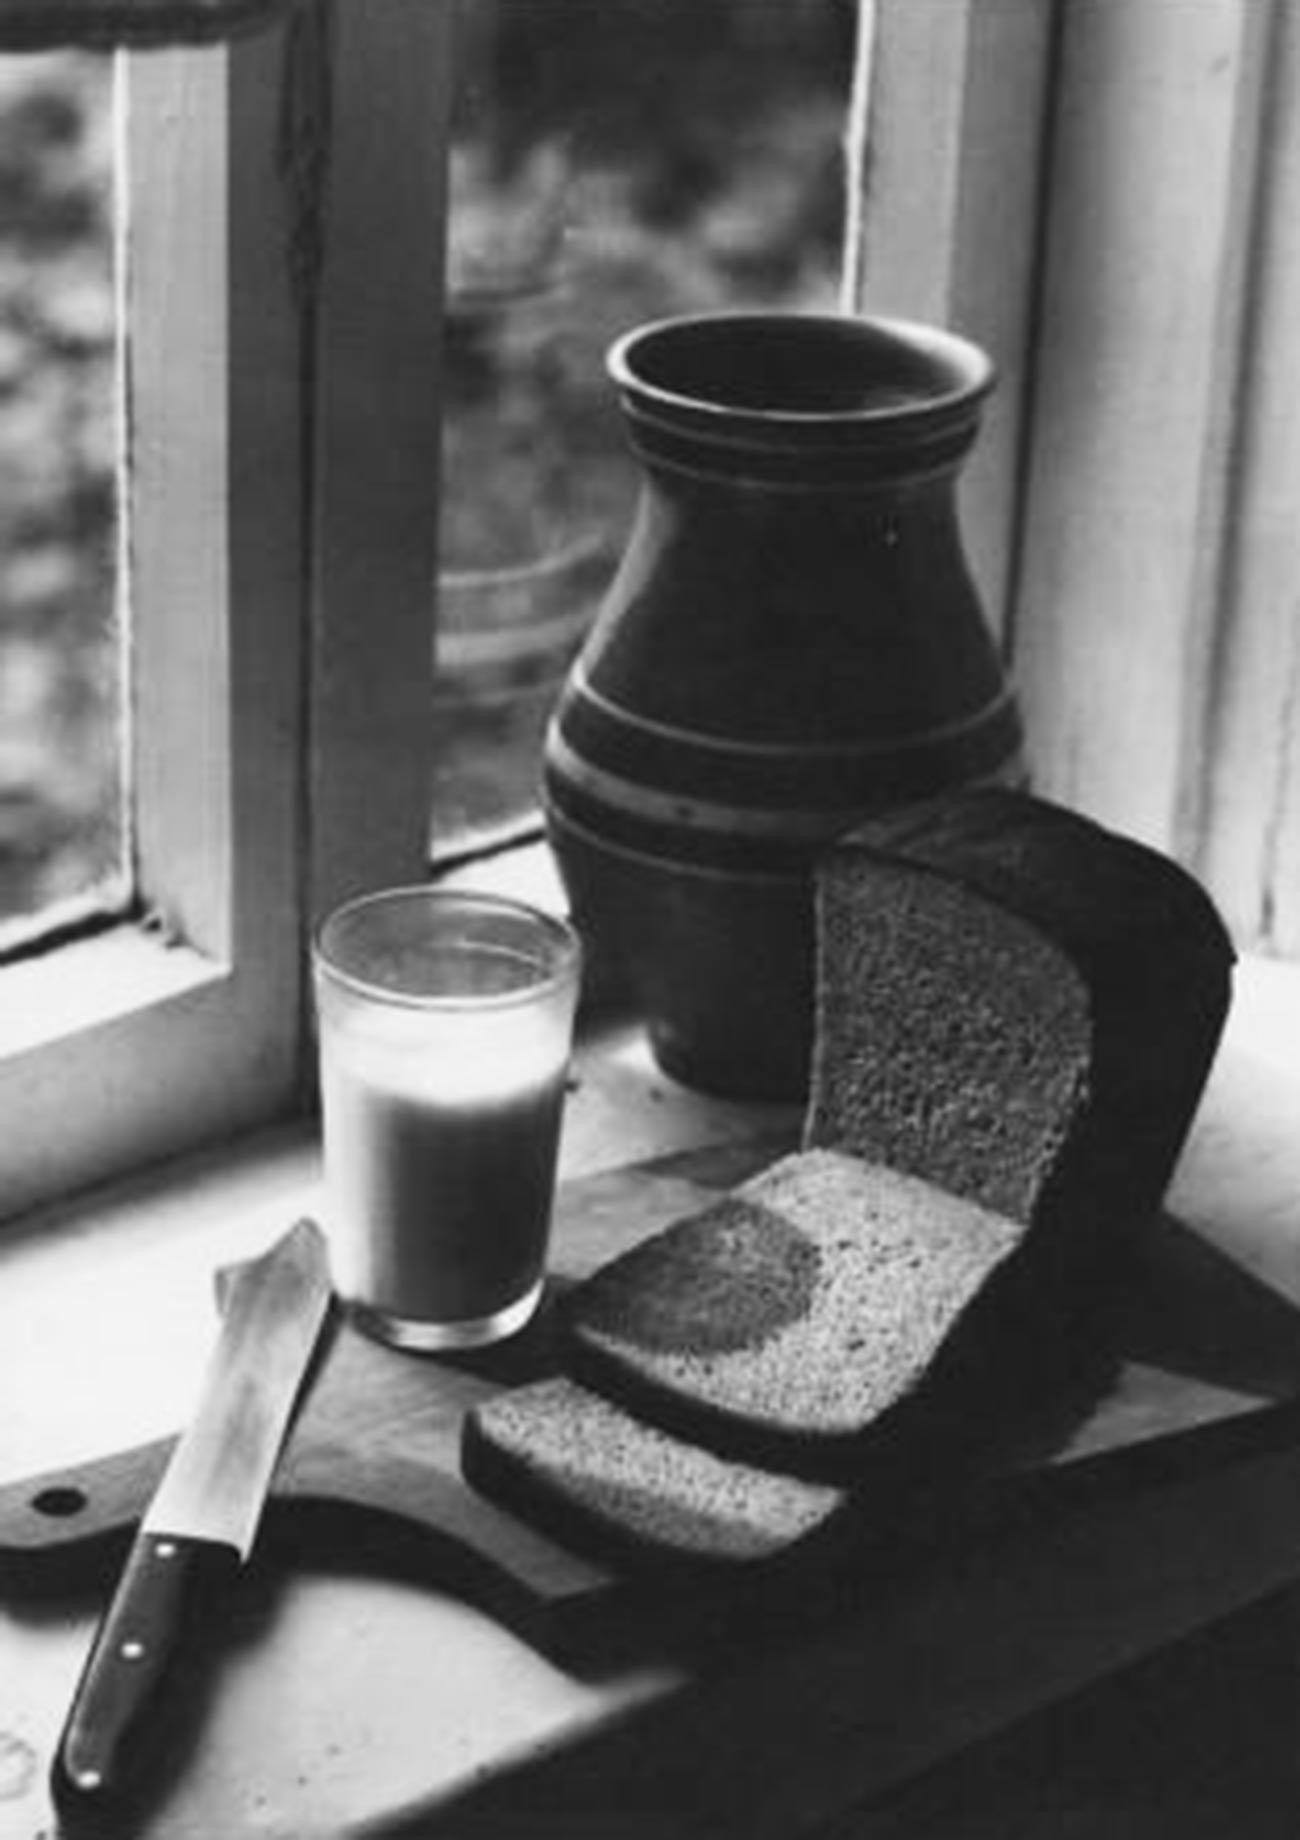 ‘Desayuno’. Leche en una olla de cerámica y pan negro, dos cosas que añoraban los rusos que vivían en el extranjero (1978).